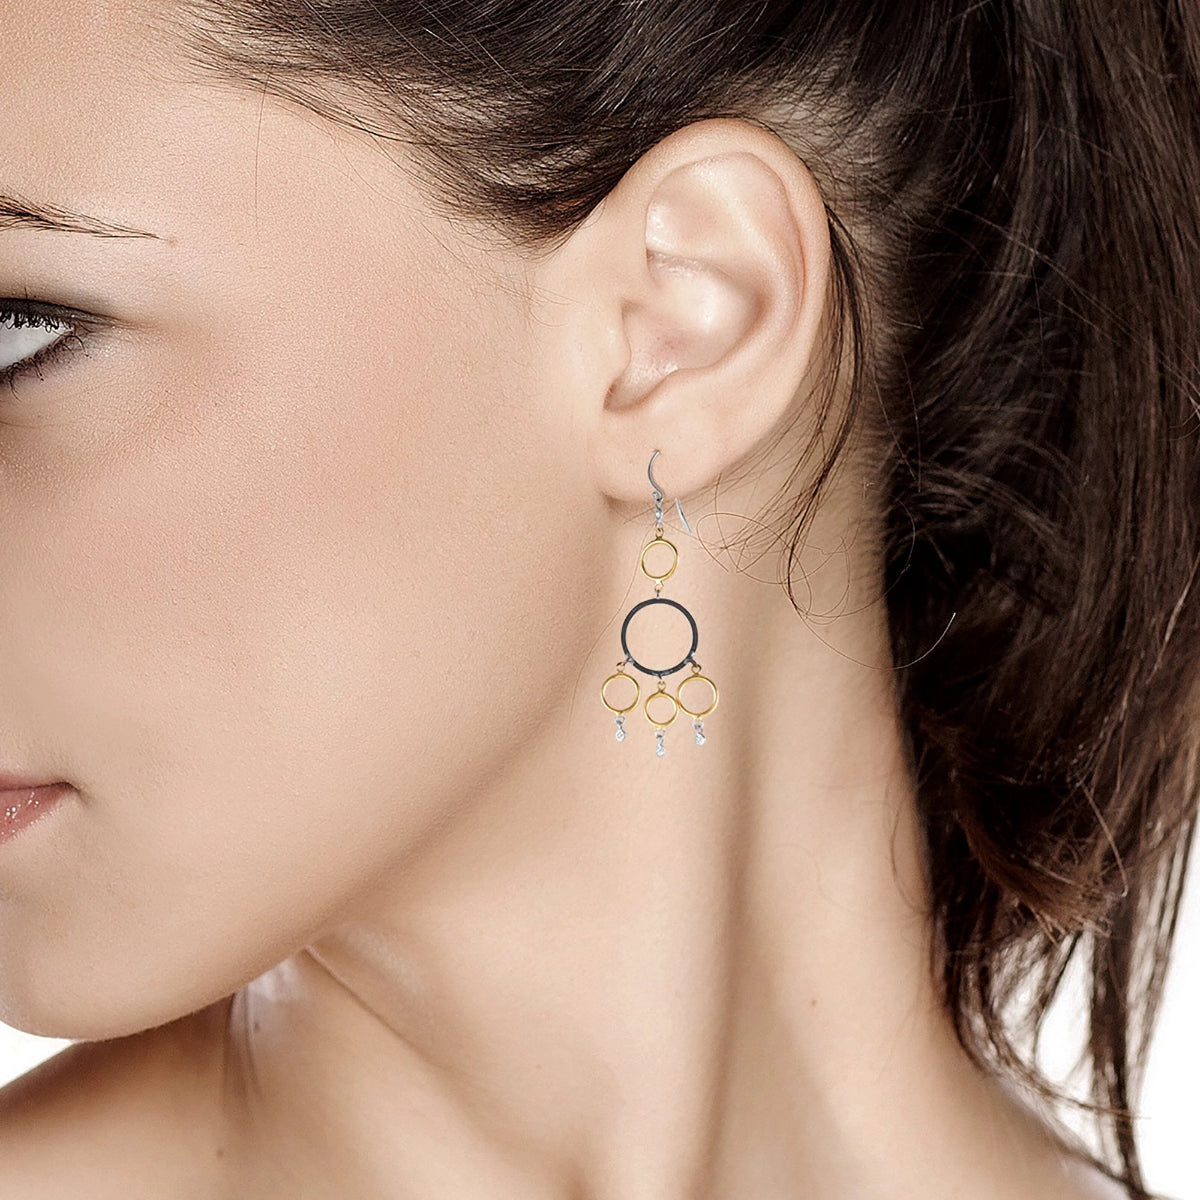 14 Karat Hoop Diamond Earrings with Blacken Circles